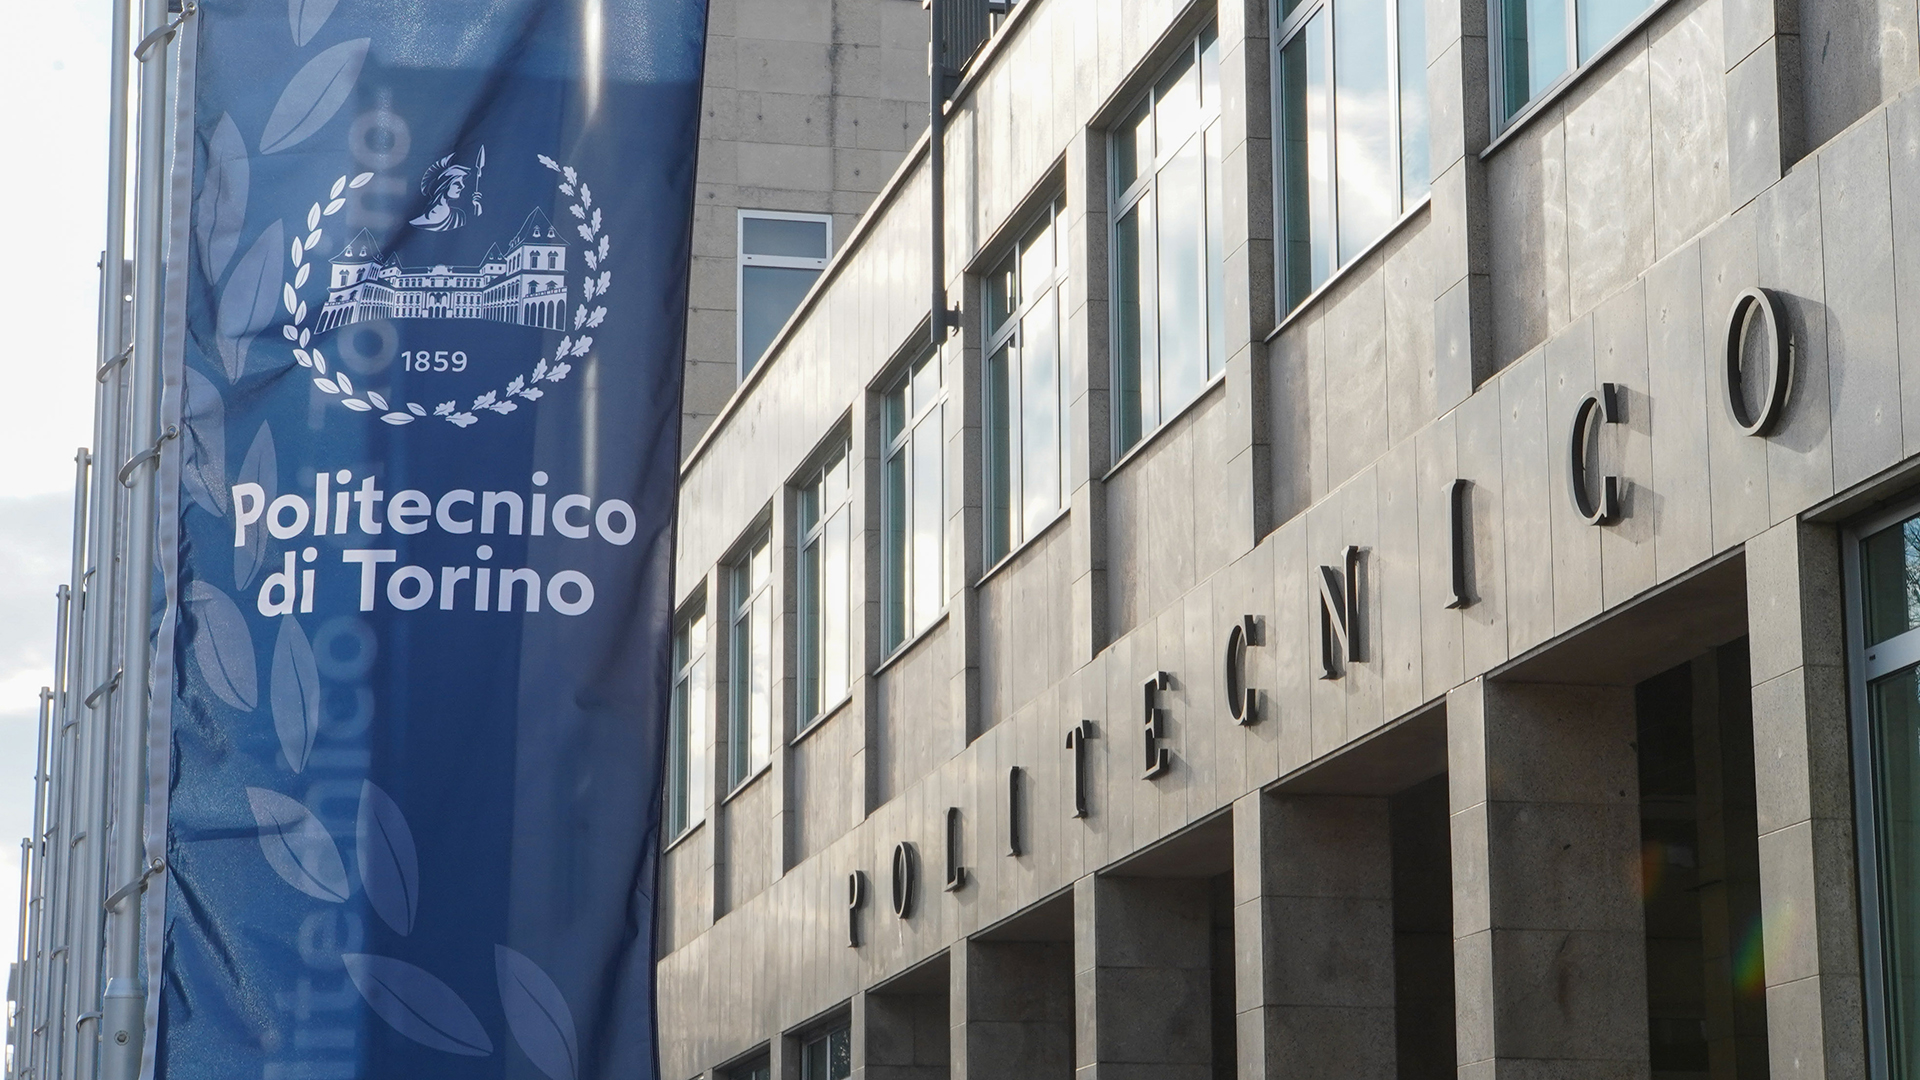 La facciata del Politecnico di Torino con stendardi blu con logo